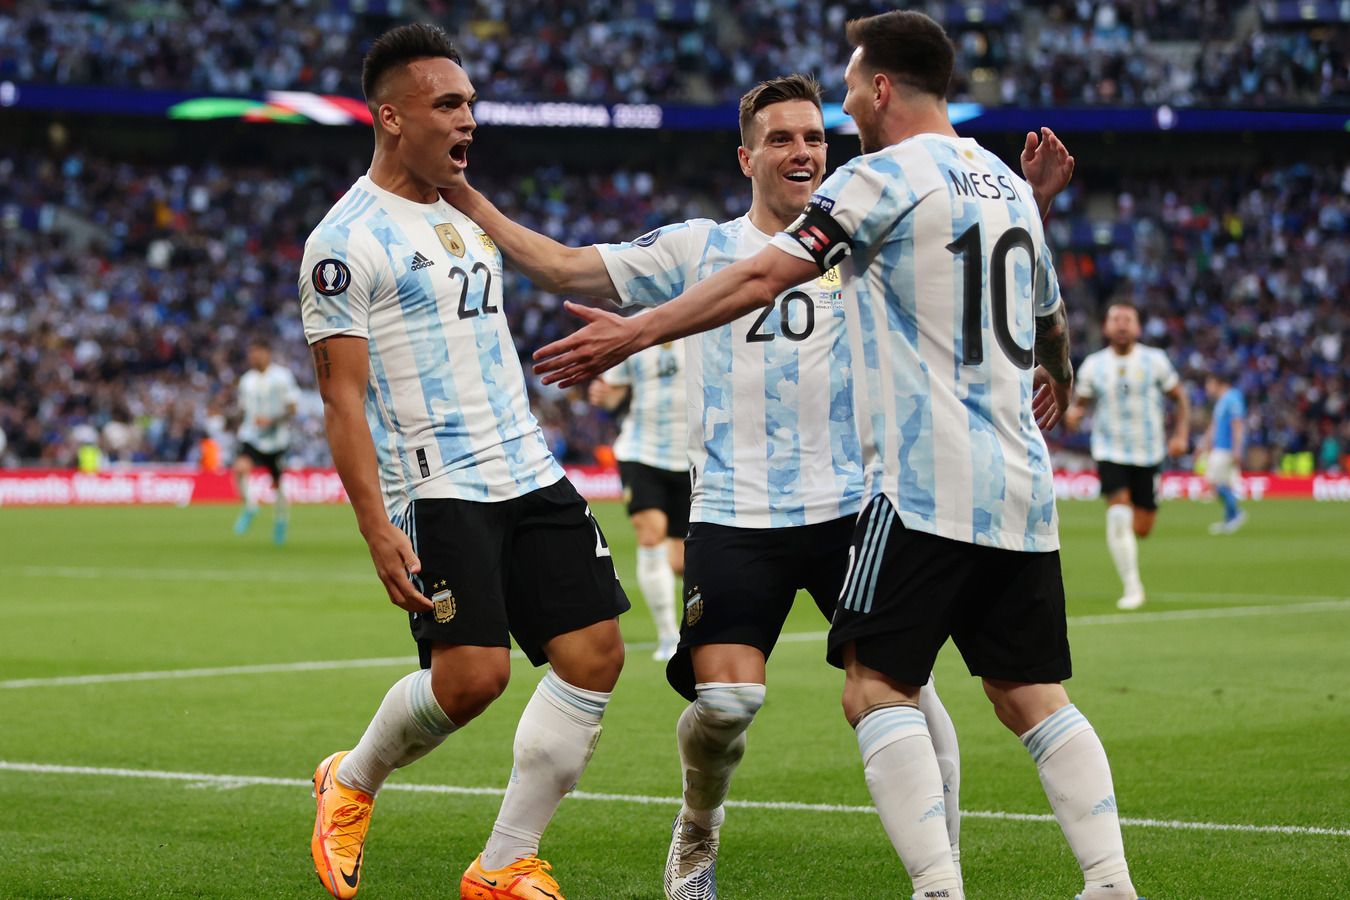 Аргентина чаще всех побеждала в серии послематчевых пенальти на чемпионатах мира